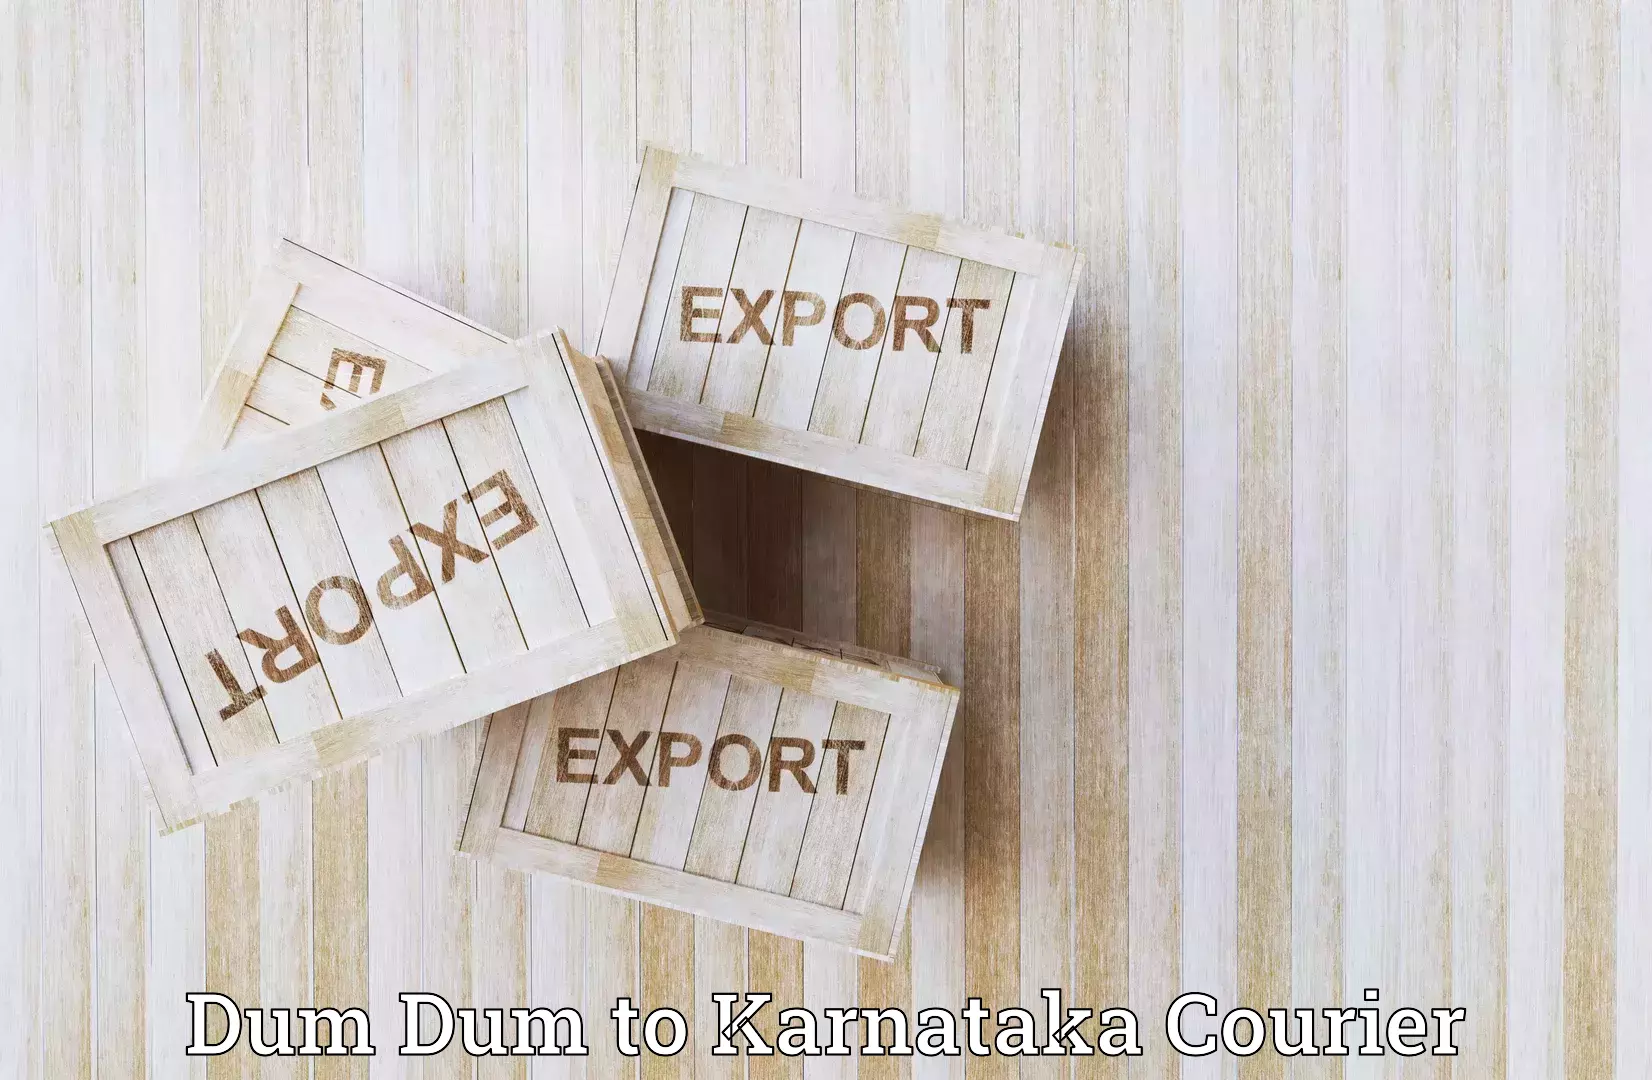 Global shipping solutions Dum Dum to Karkala